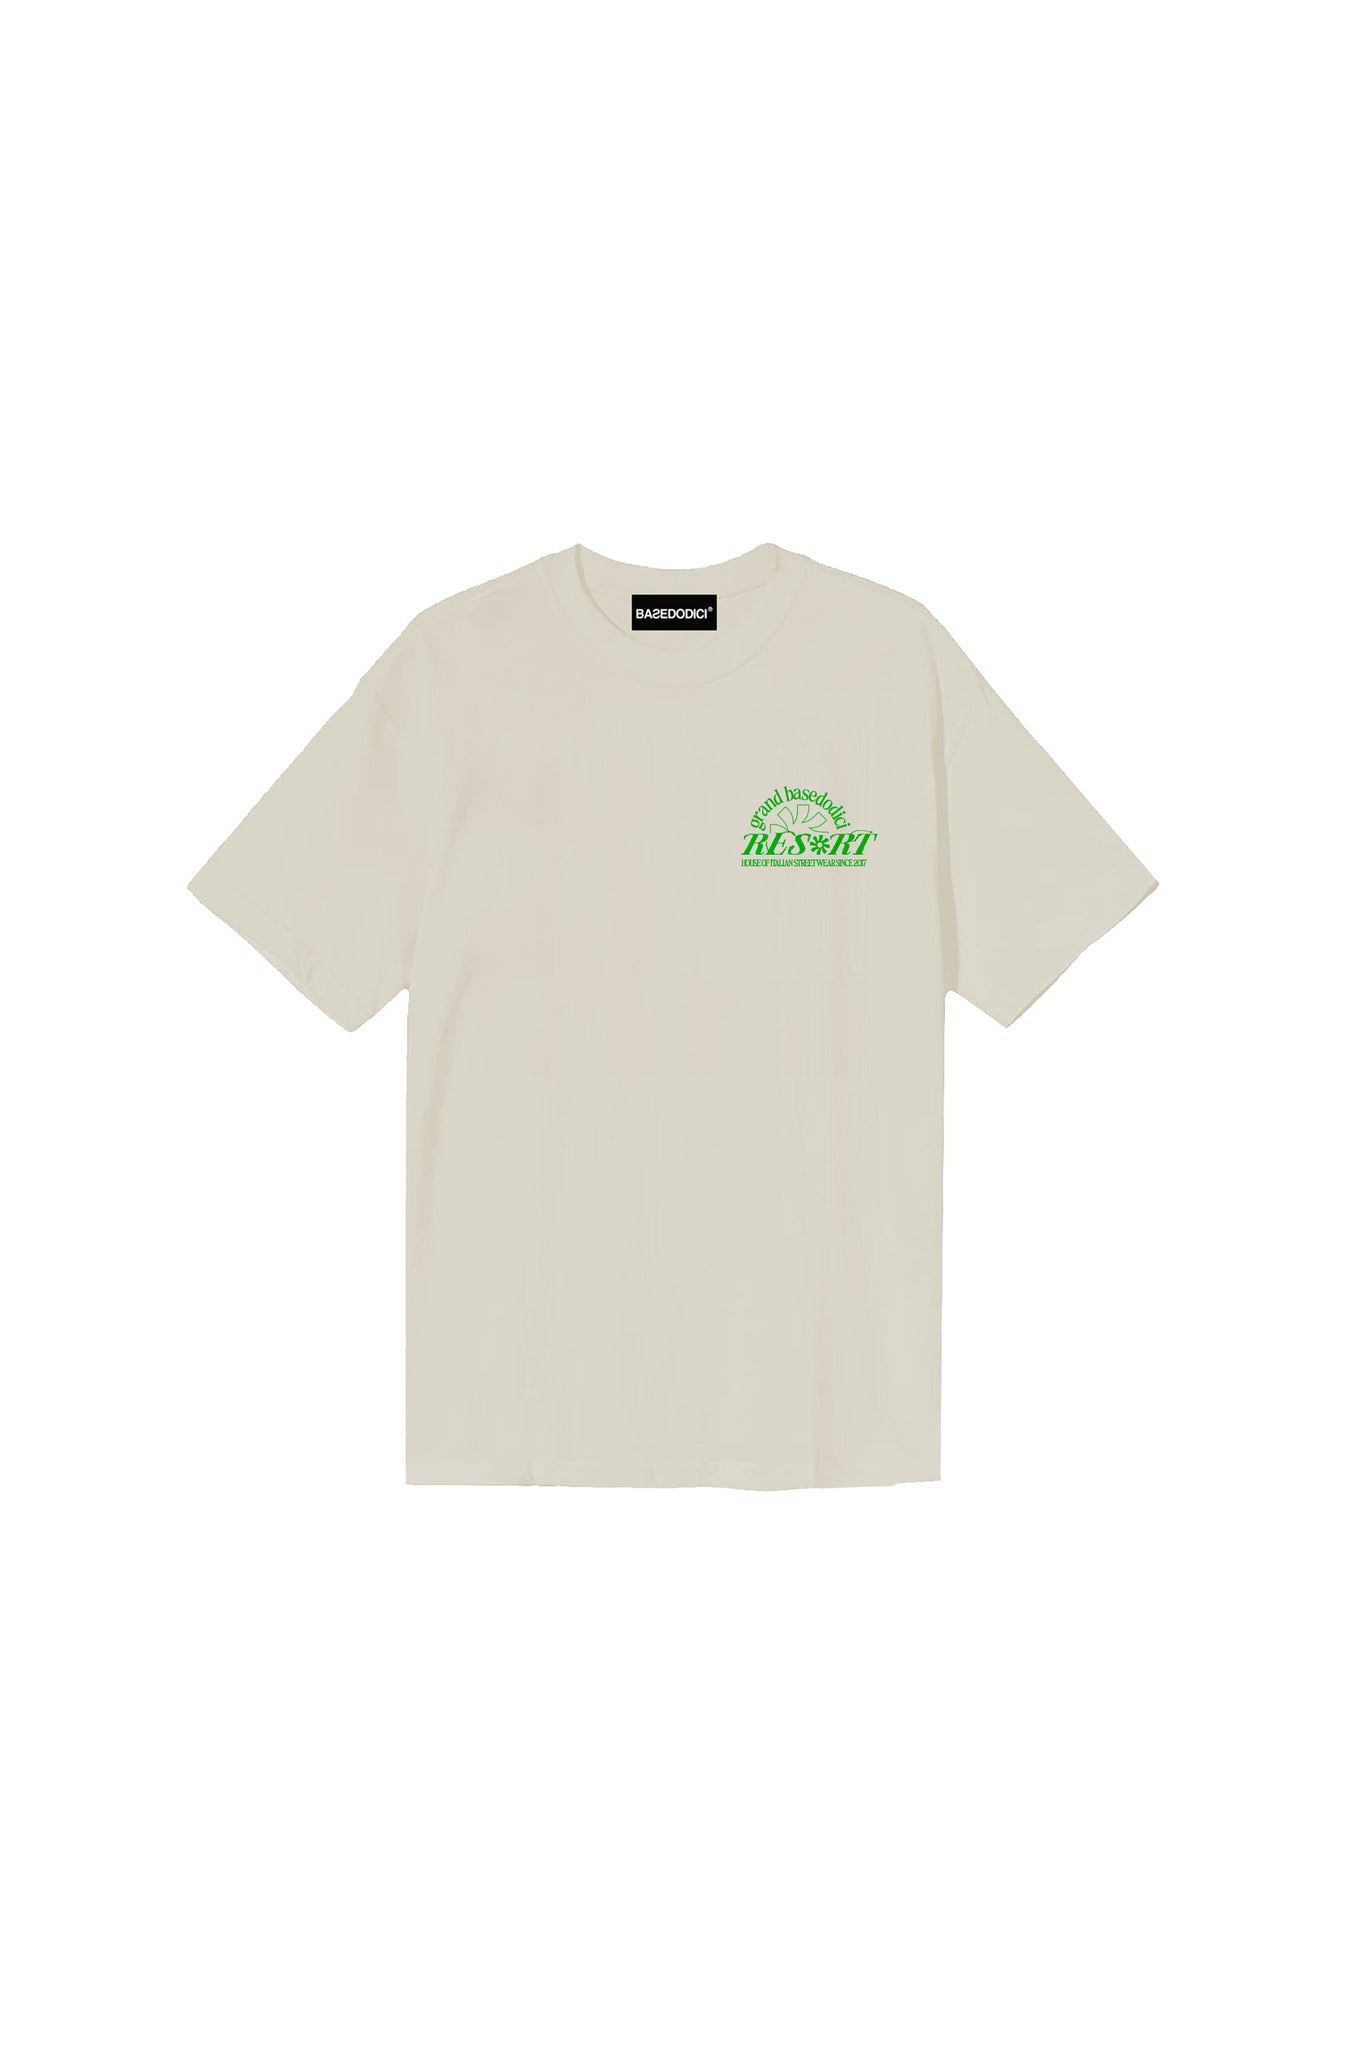 T-Shirt “RESORT” Grand Resort Cream